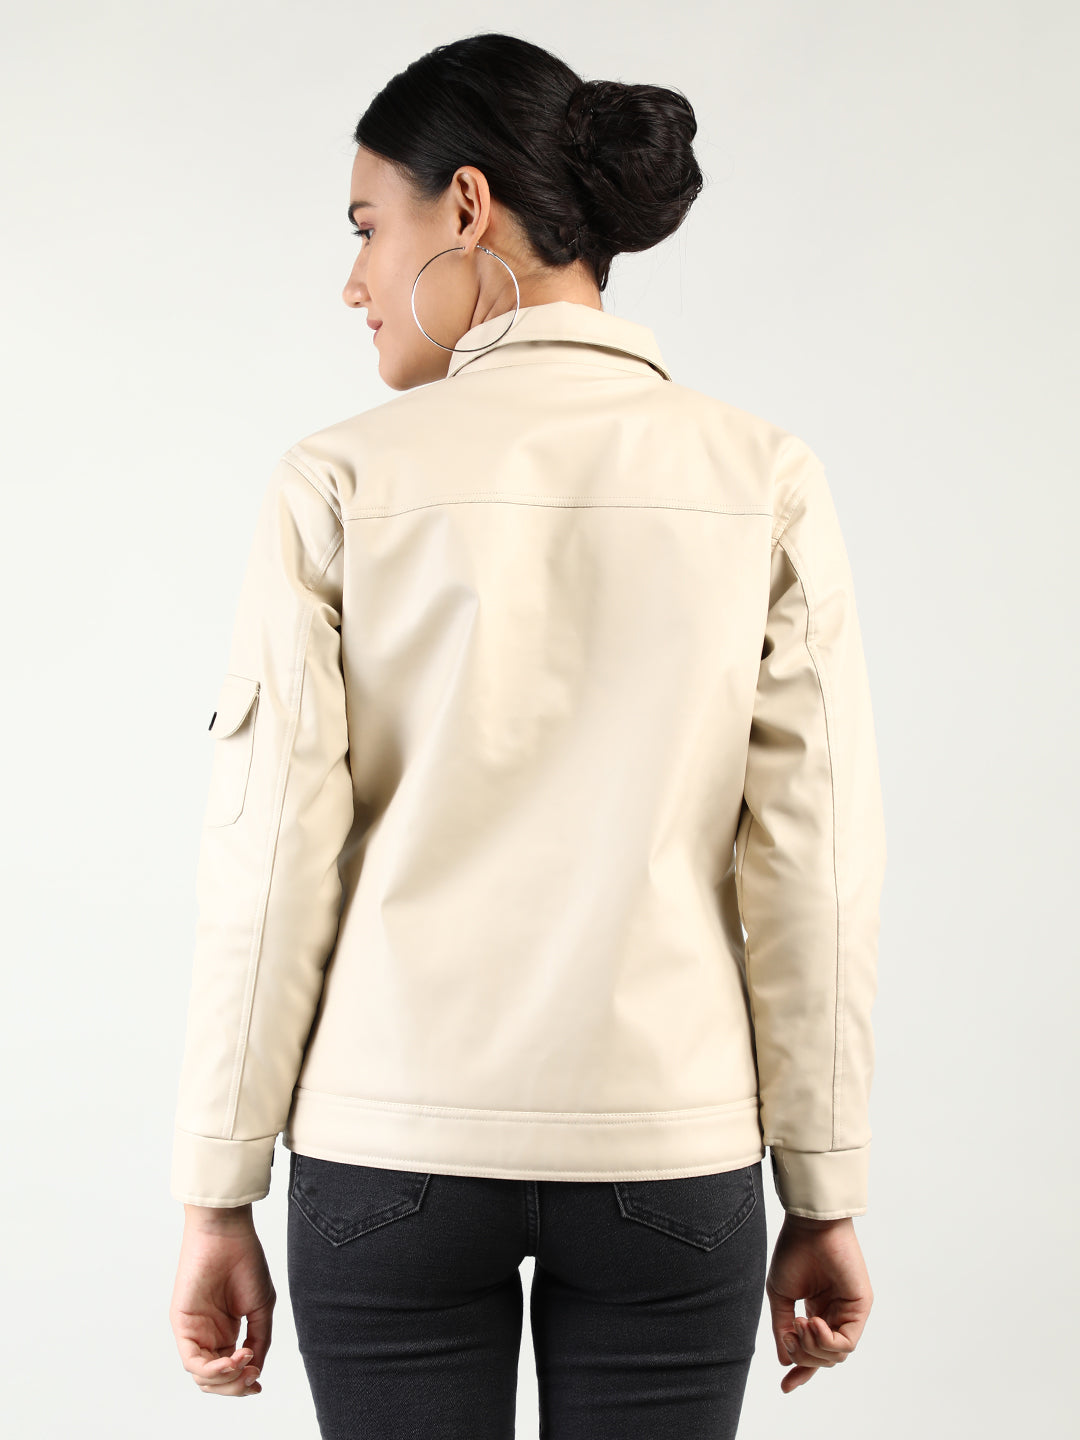 Women Winter Wear Stylish Jacket – Dlanxa